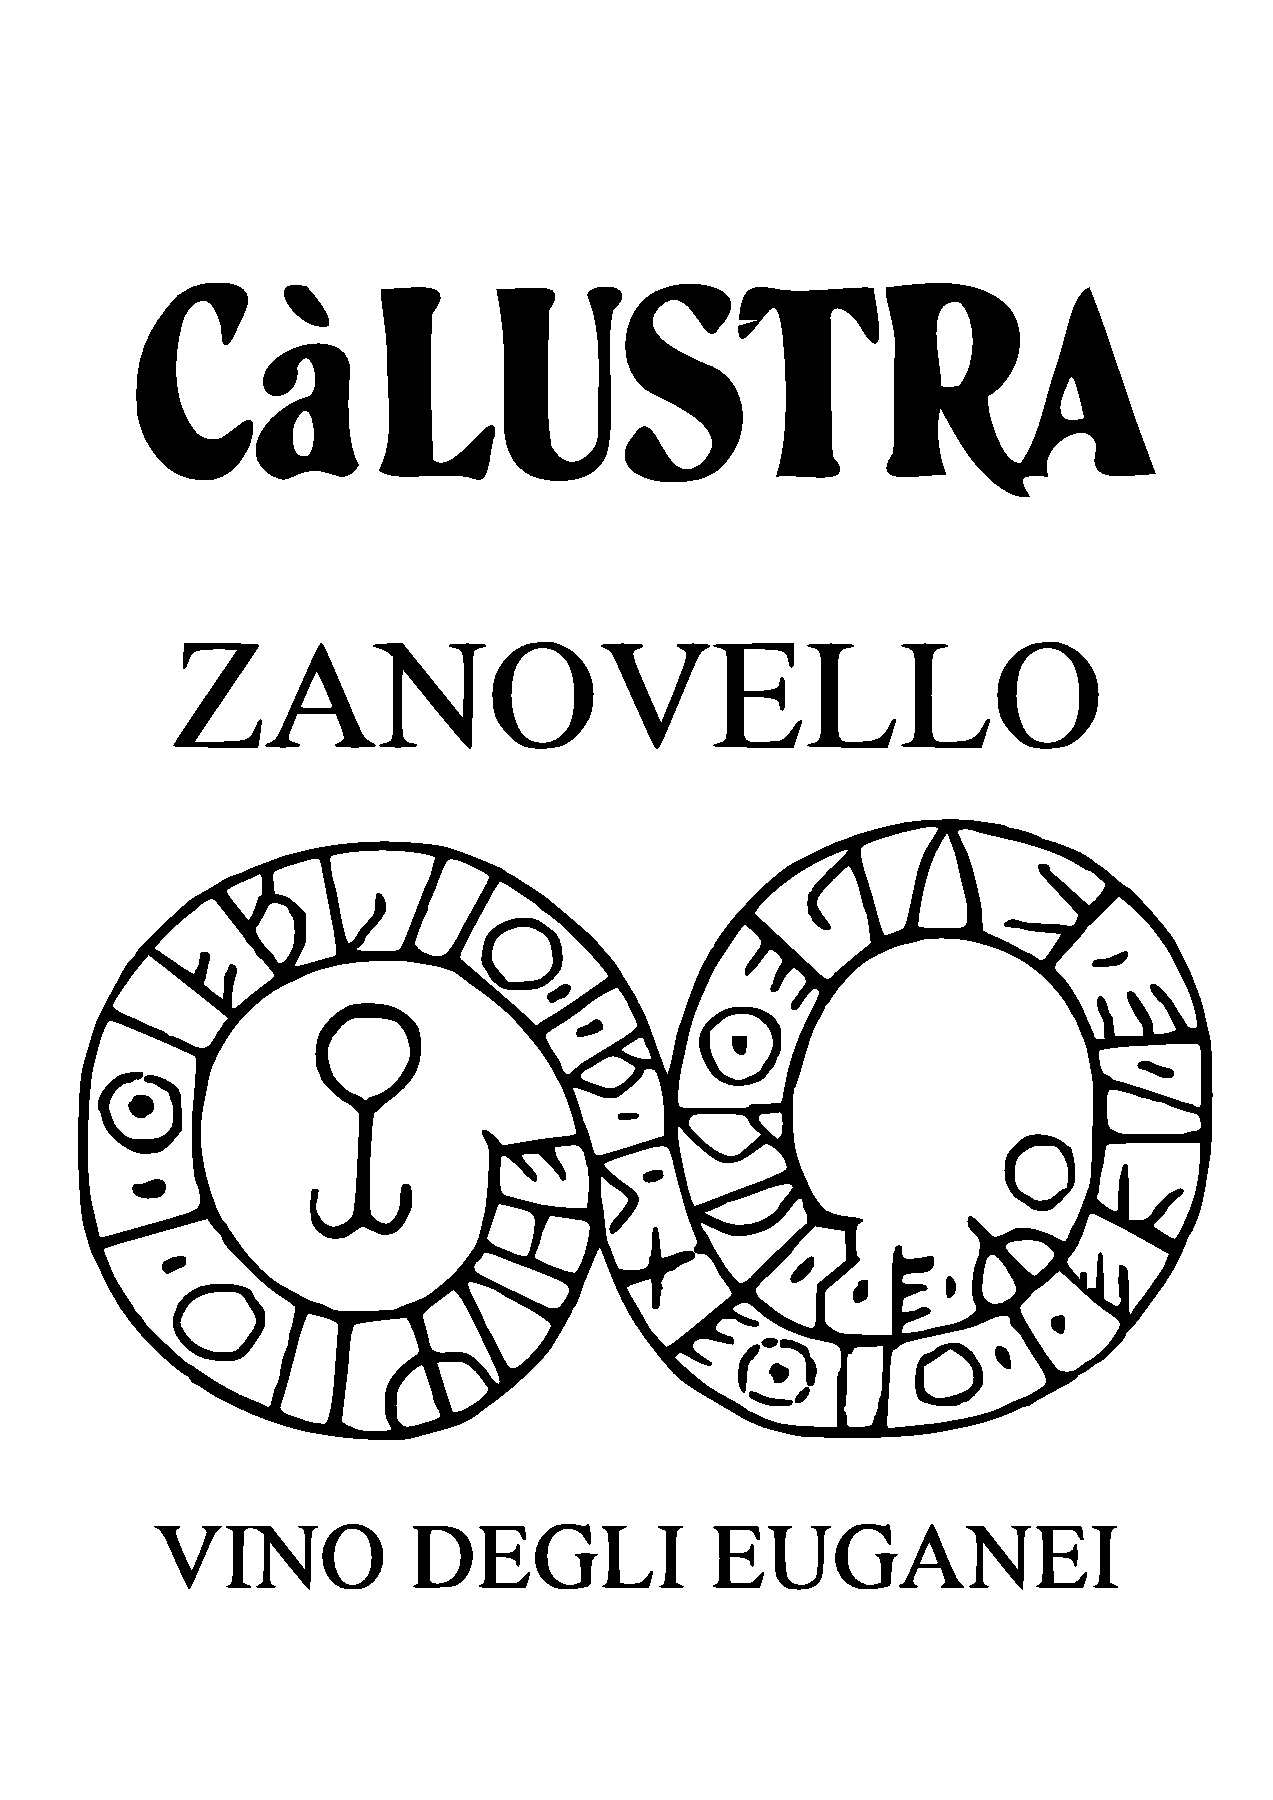 Calustra / Zanovello (Colli Euganei)